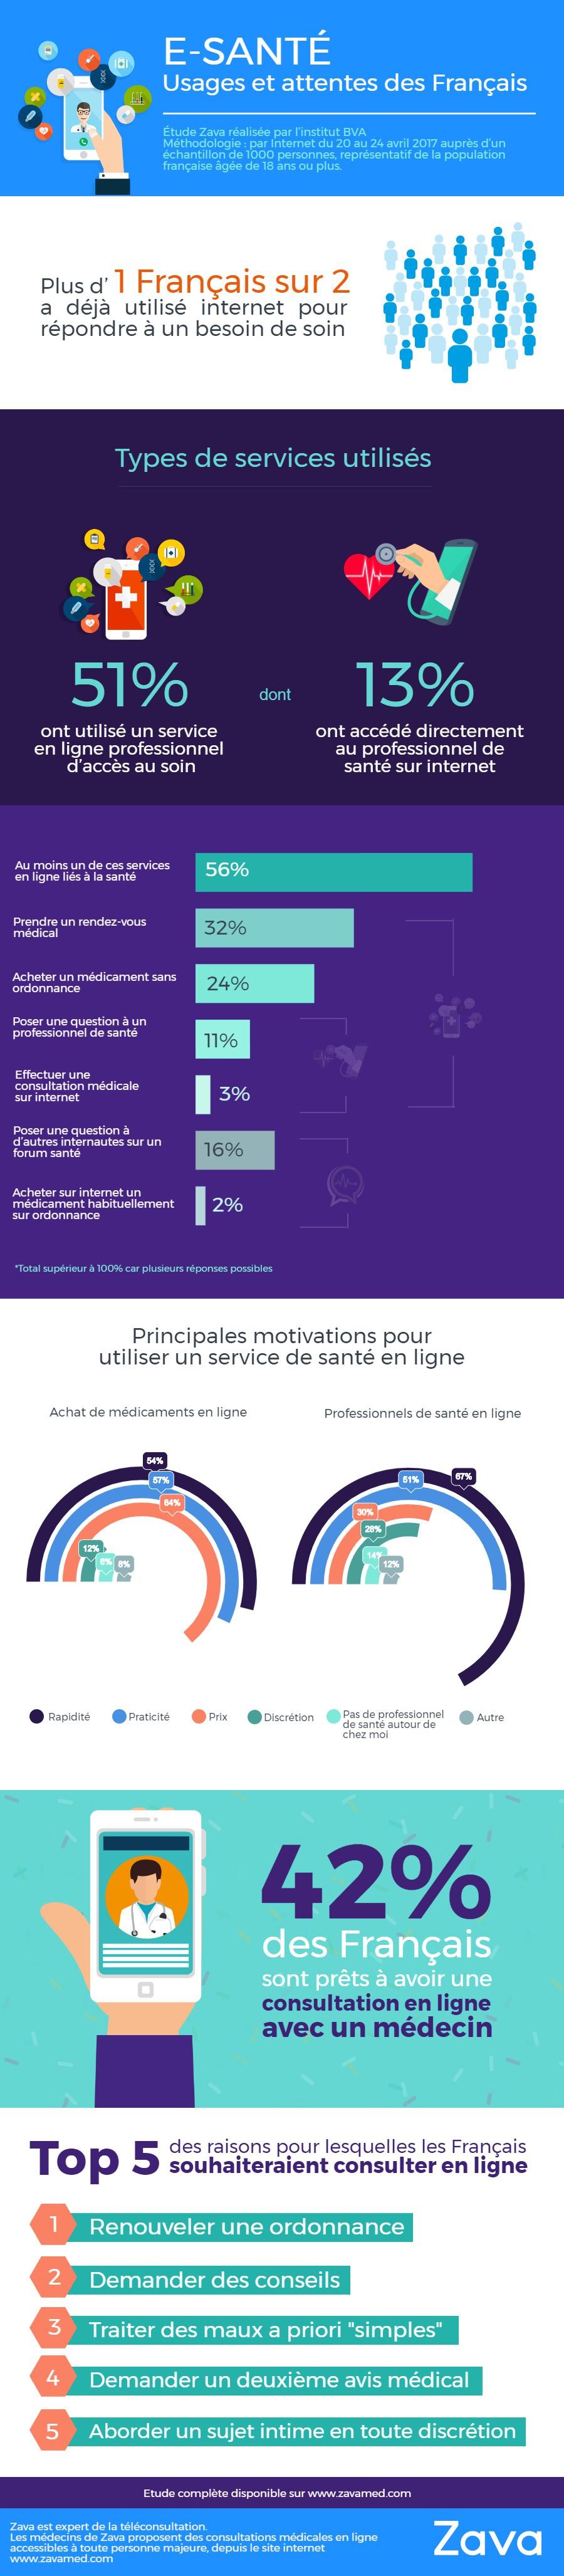 Infographie "E-santé : usages et attentes des Français" (juin 2017)